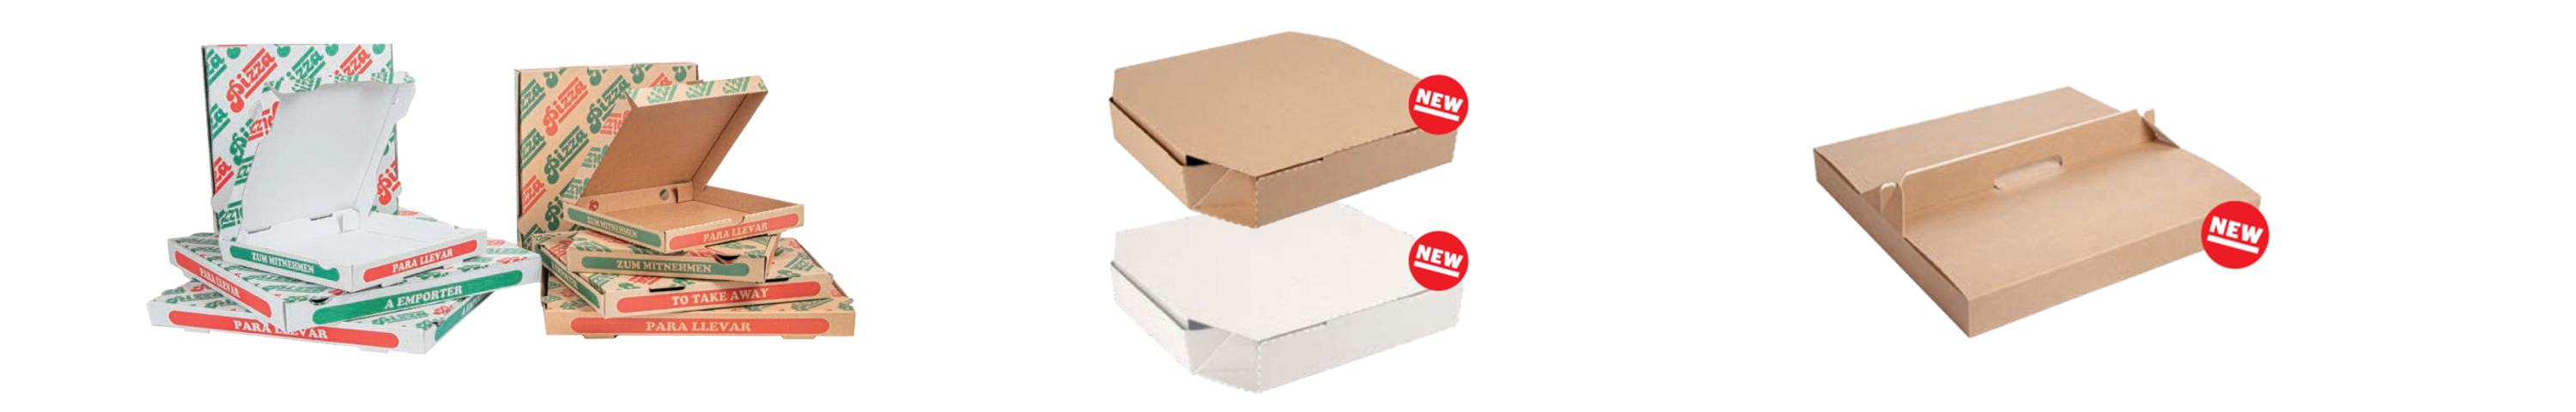 cajas para pizzas al por mayor